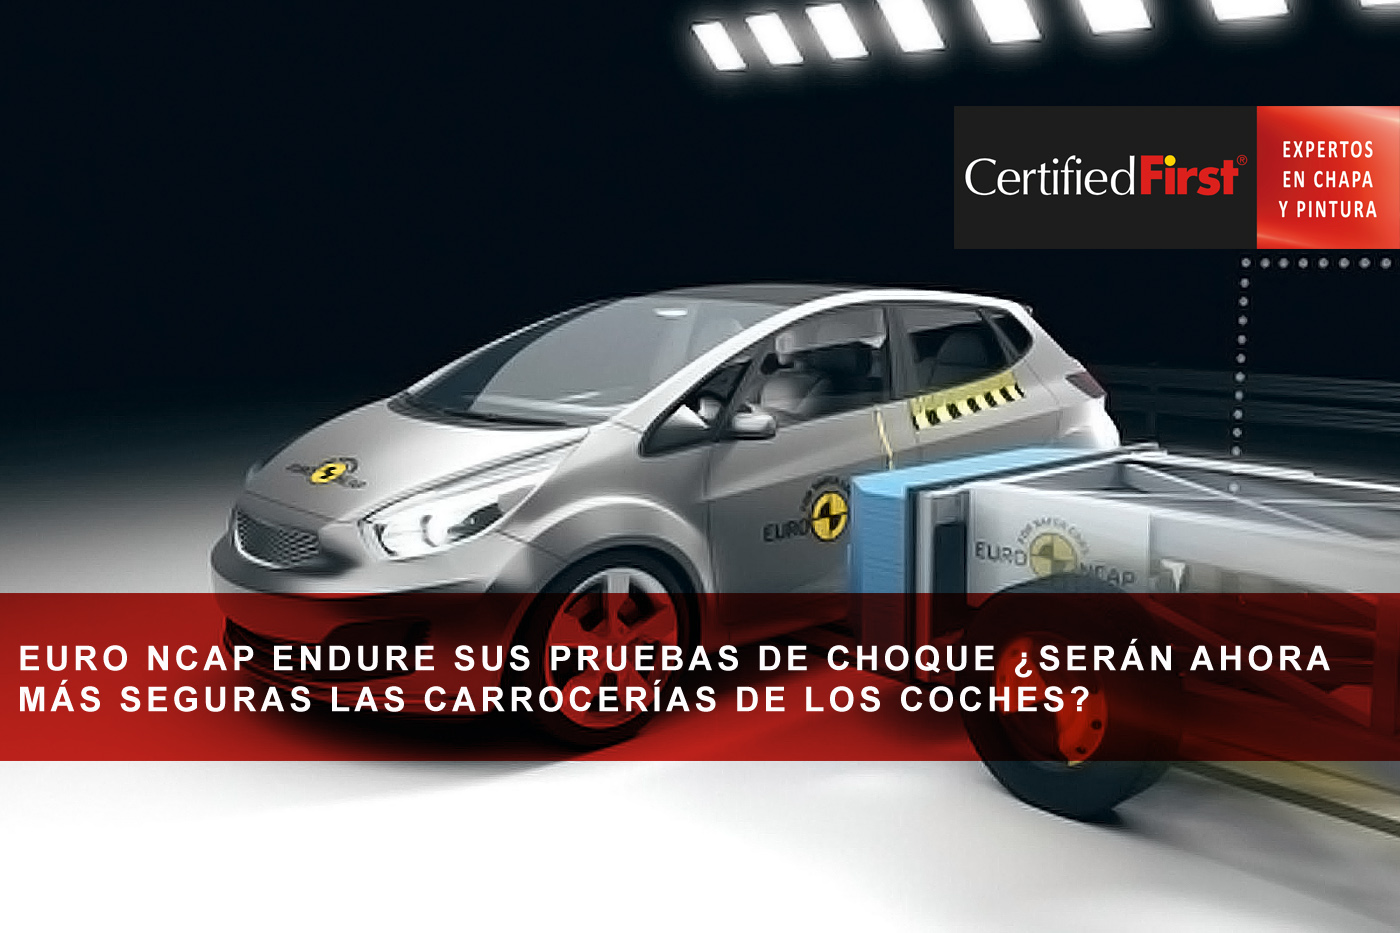 Euro NCAP endure sus pruebas de choque ¿serán ahora más seguras las carrocerías de los coches? 